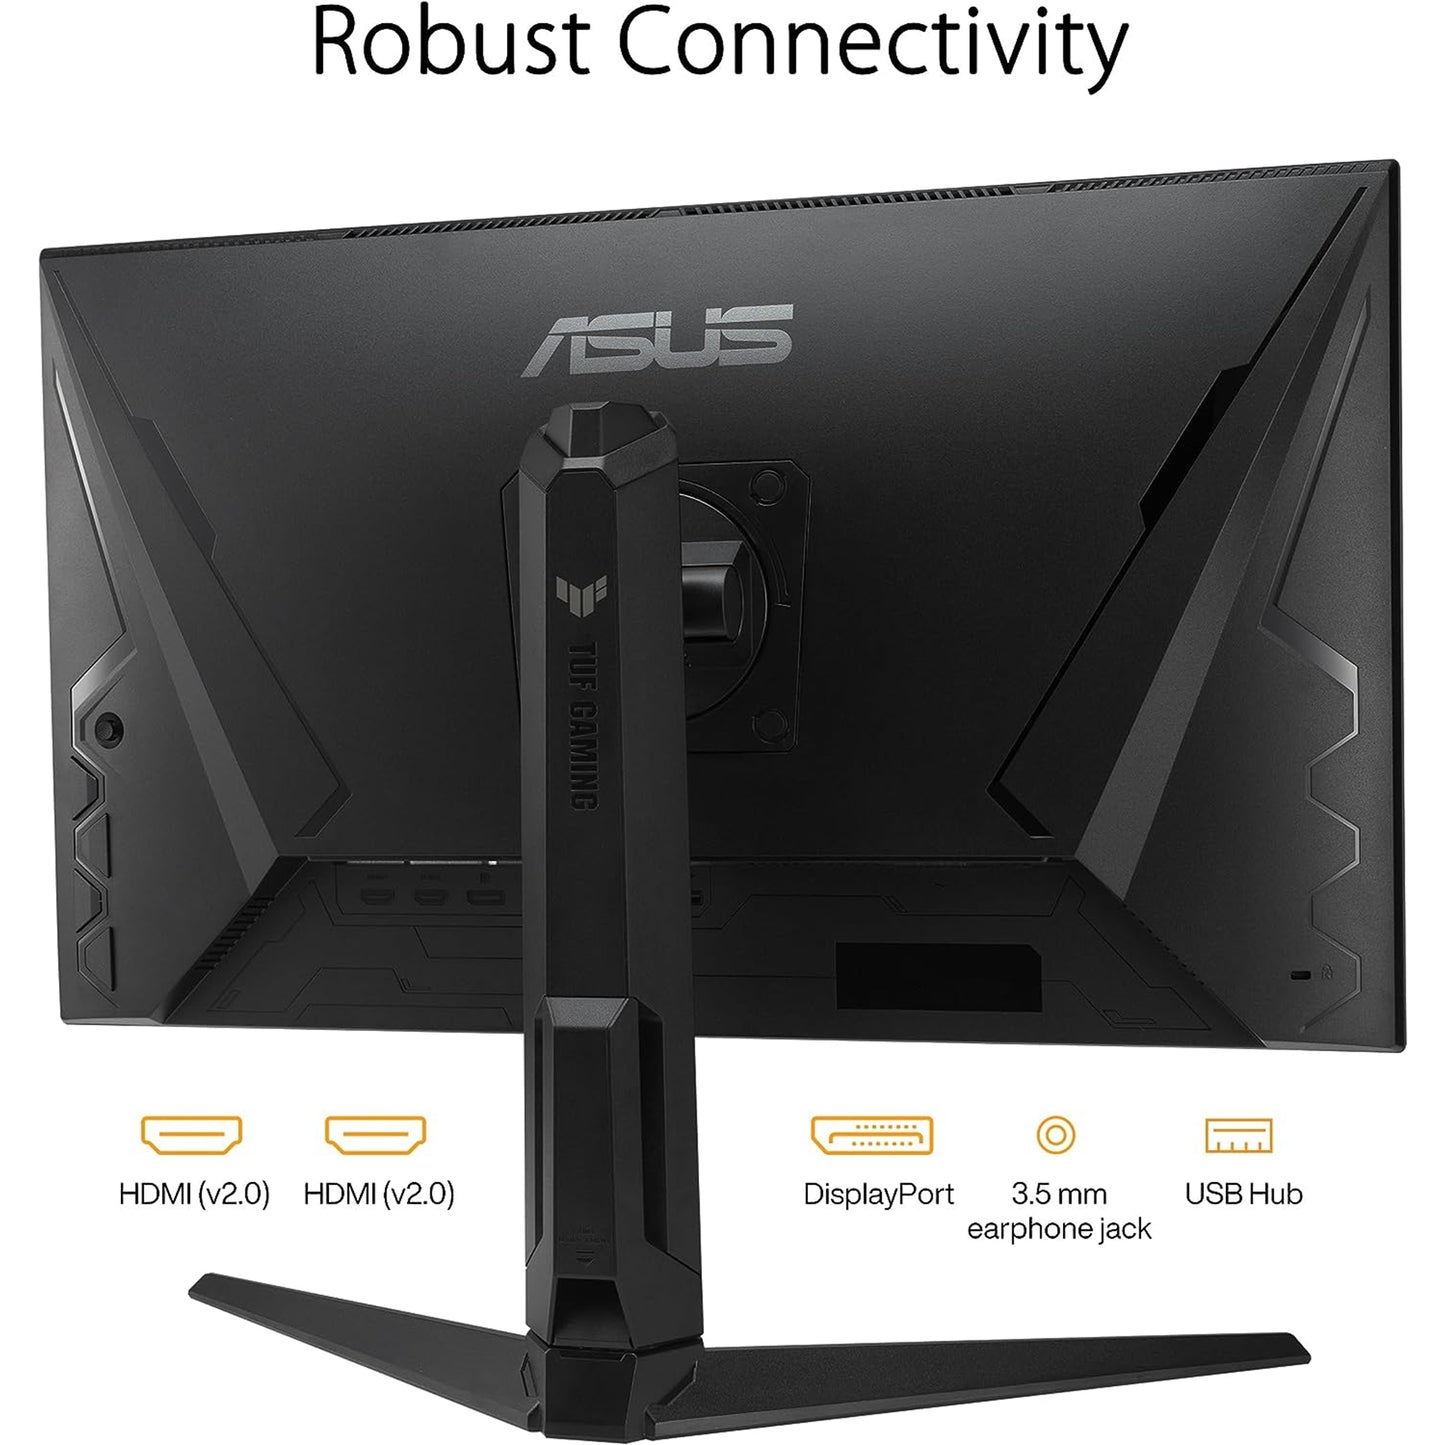 شاشة ASUS TUF Gaming مقاس 27 بوصة بدقة 1440 بكسل (VG27AQL3A) - QHD (2560 × 1440)، 180 هرتز، 1 مللي ثانية، تقنية IPS سريعة، مزامنة شديدة الحركة منخفضة الضبابية، متوافقة مع G-SYNC، Freesync Premium، 130% sRGB، DisplayHDR 400، ضمان لمدة 3 سنوات 